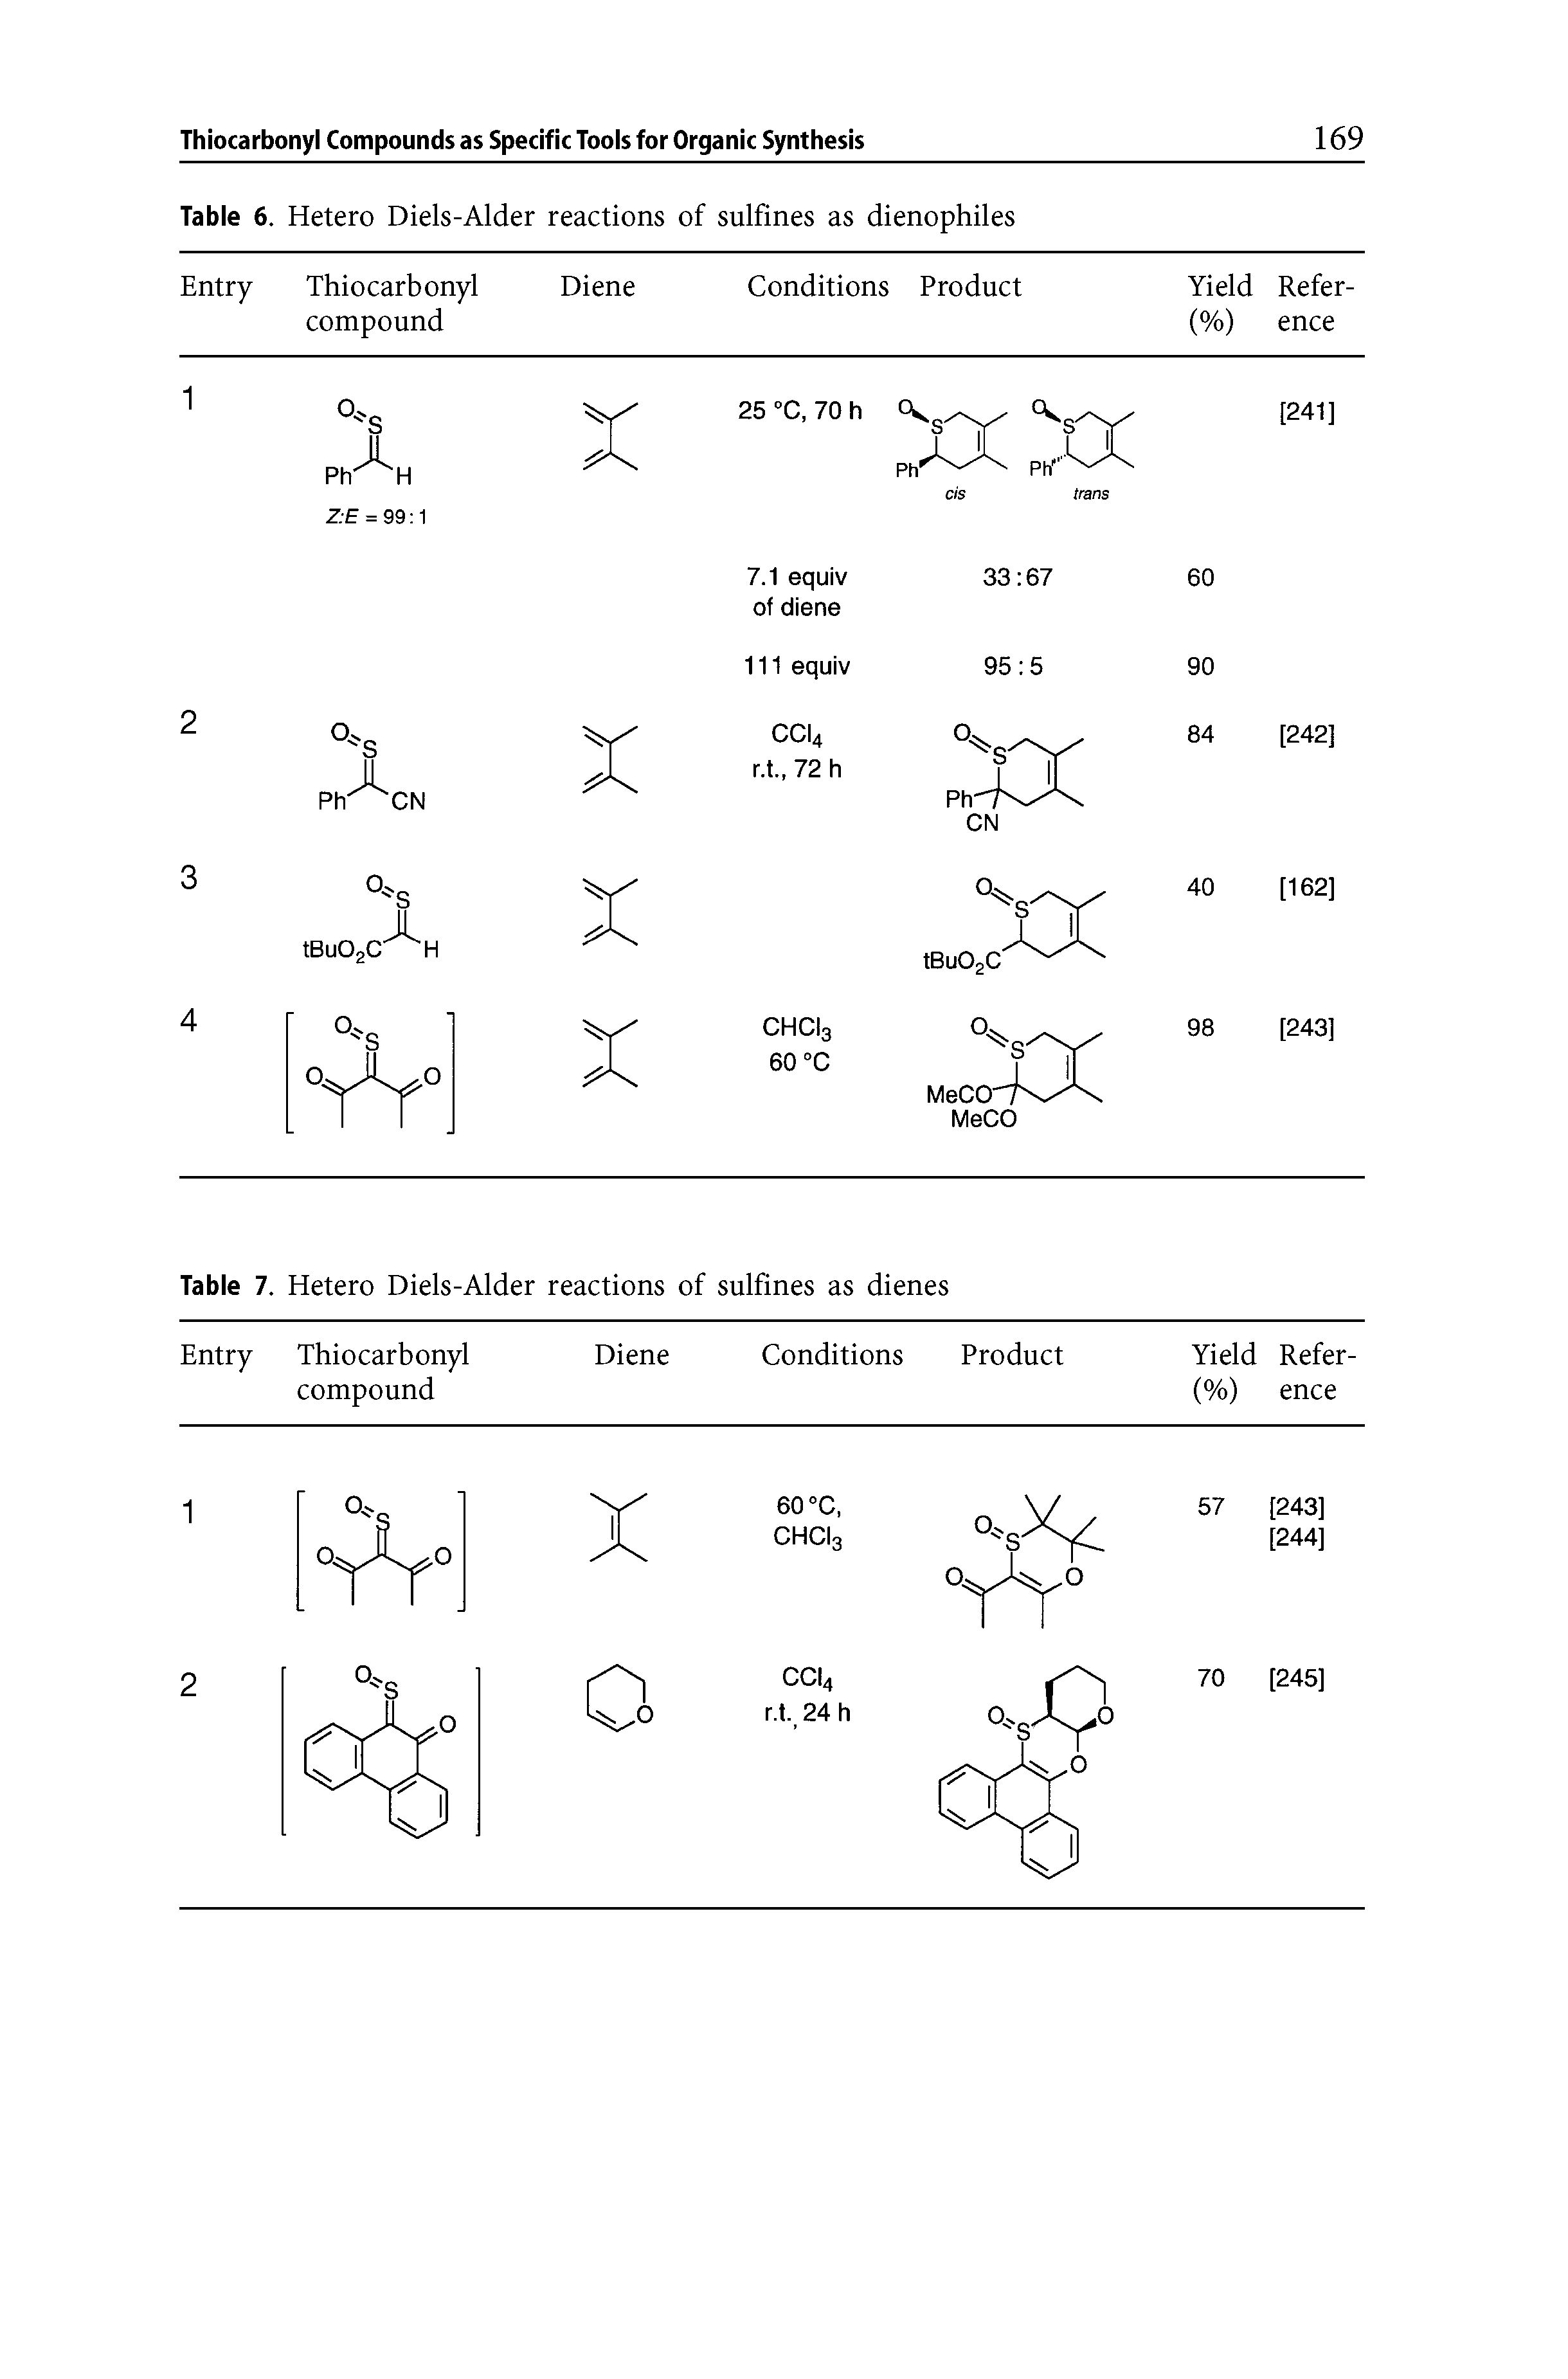 Table 6. Hetero Diels-Alder reactions of sulfines as dienophiles...